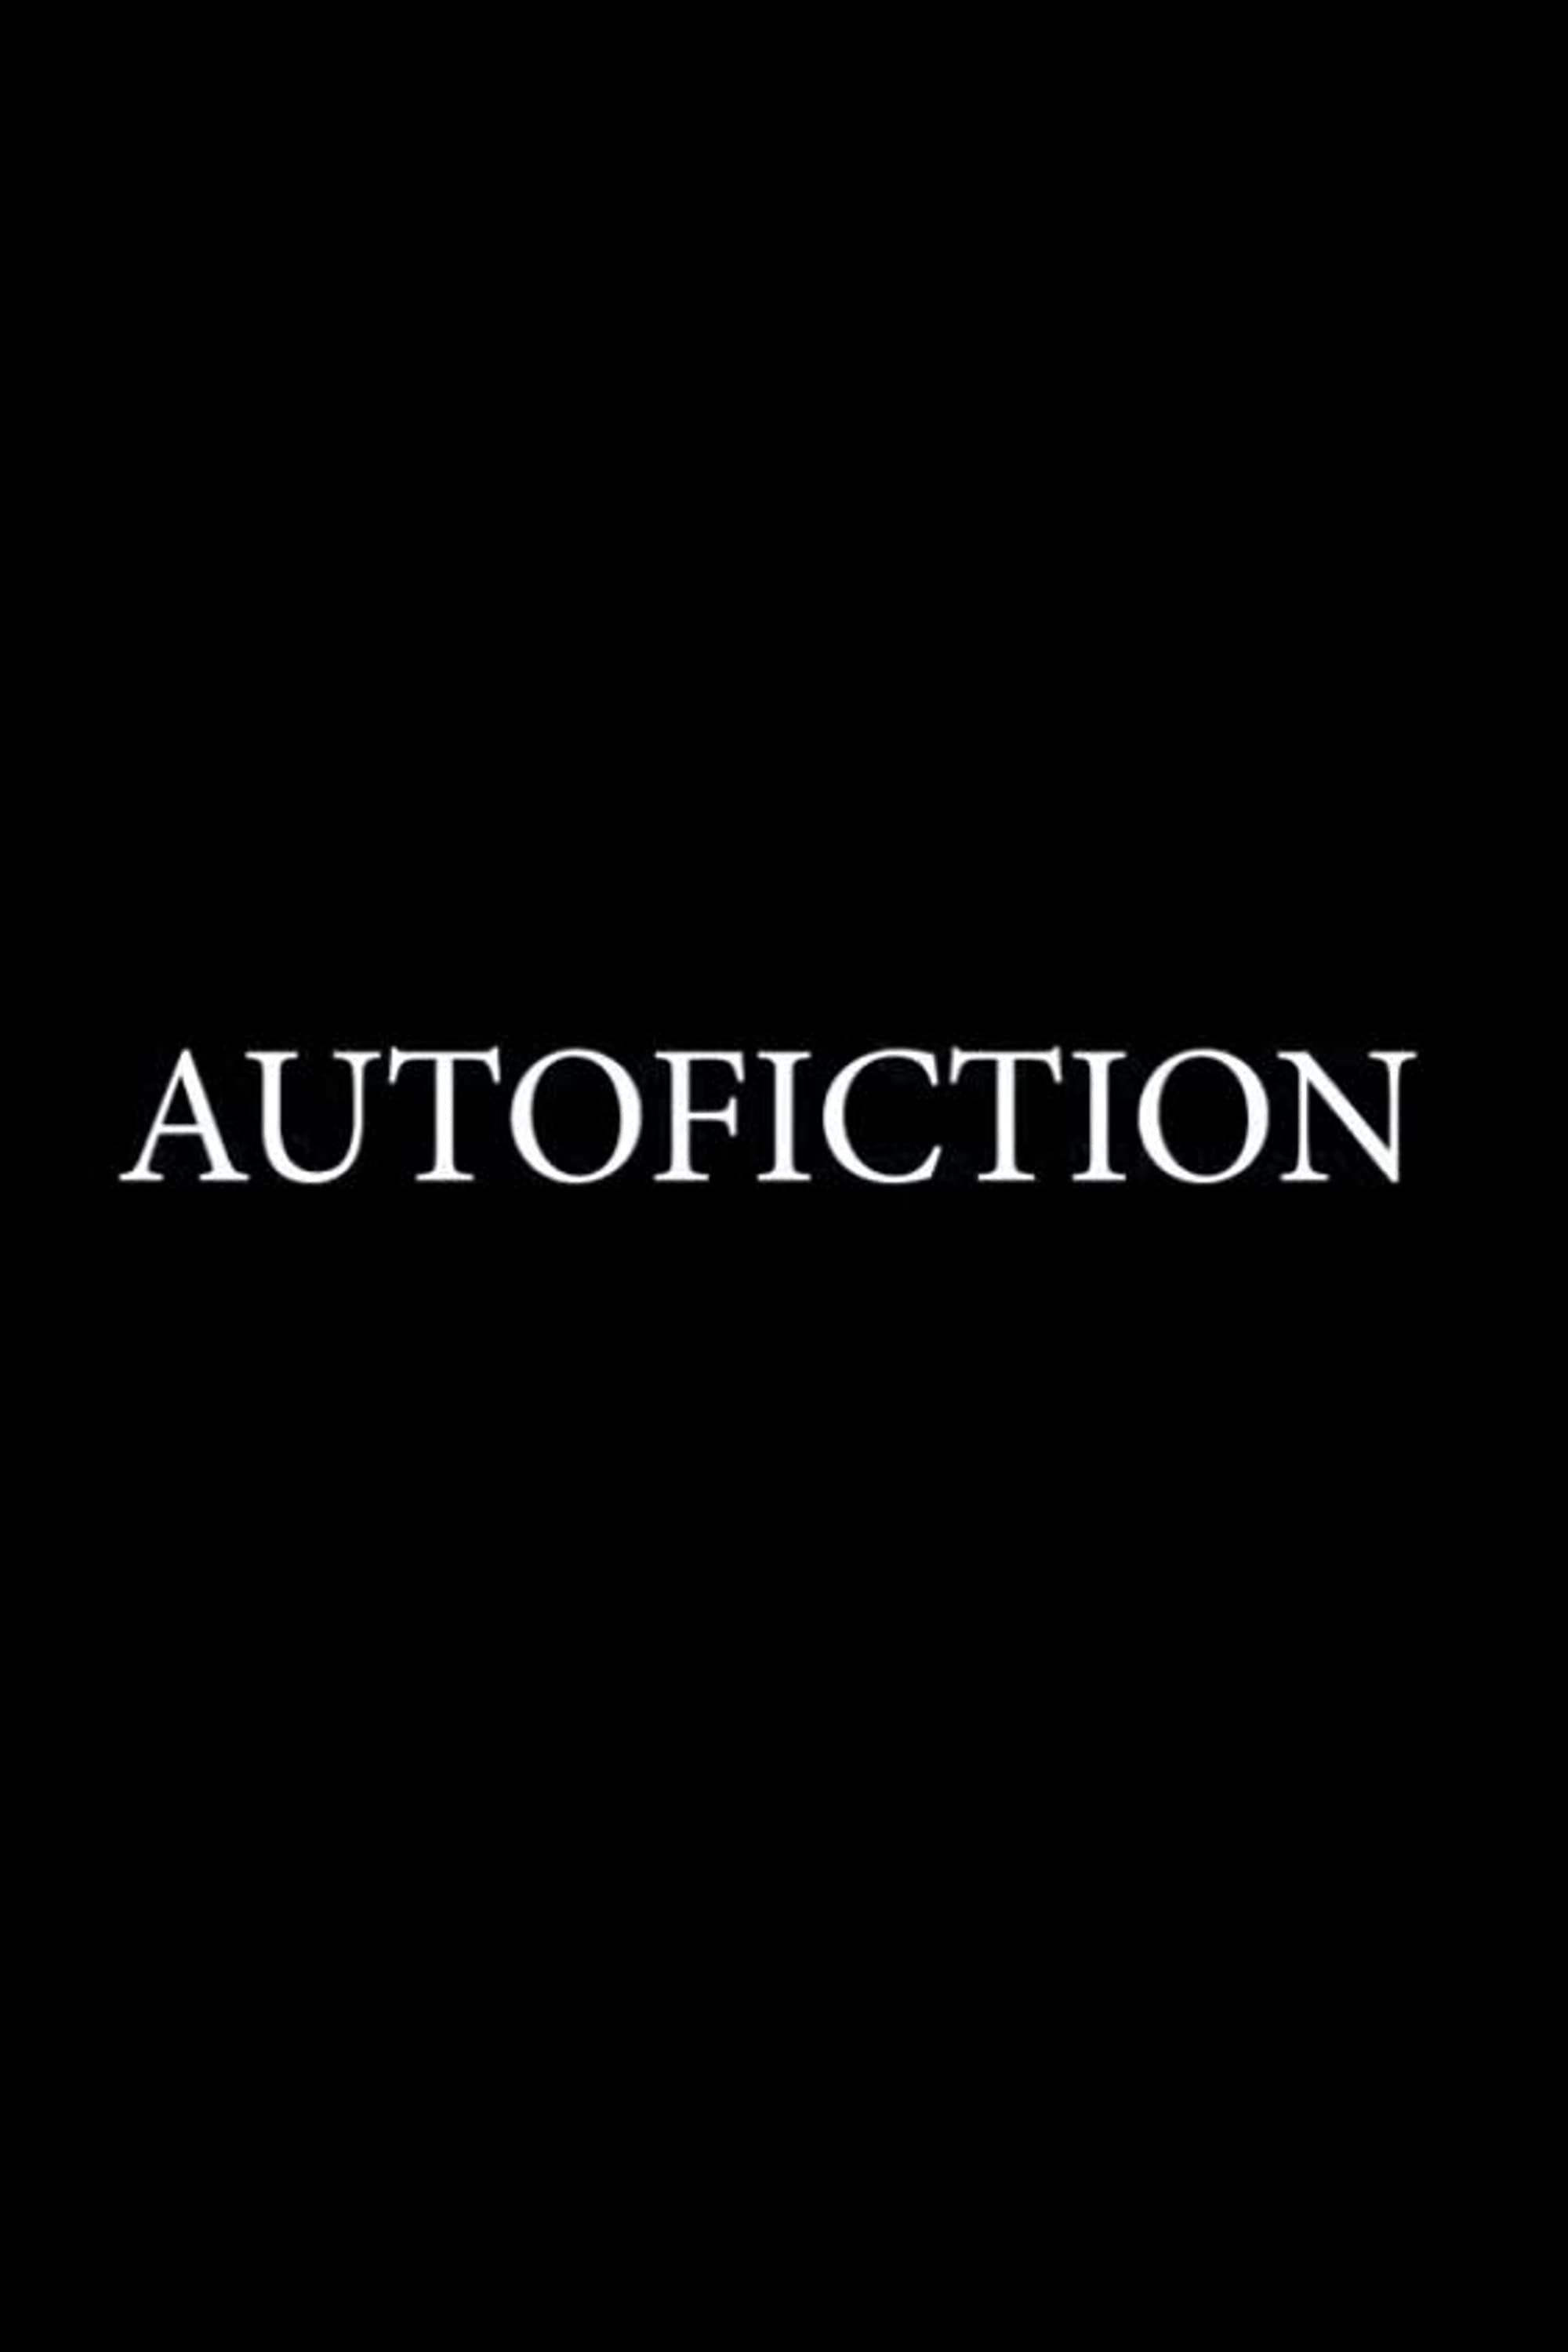 Autofiction: A Short Film